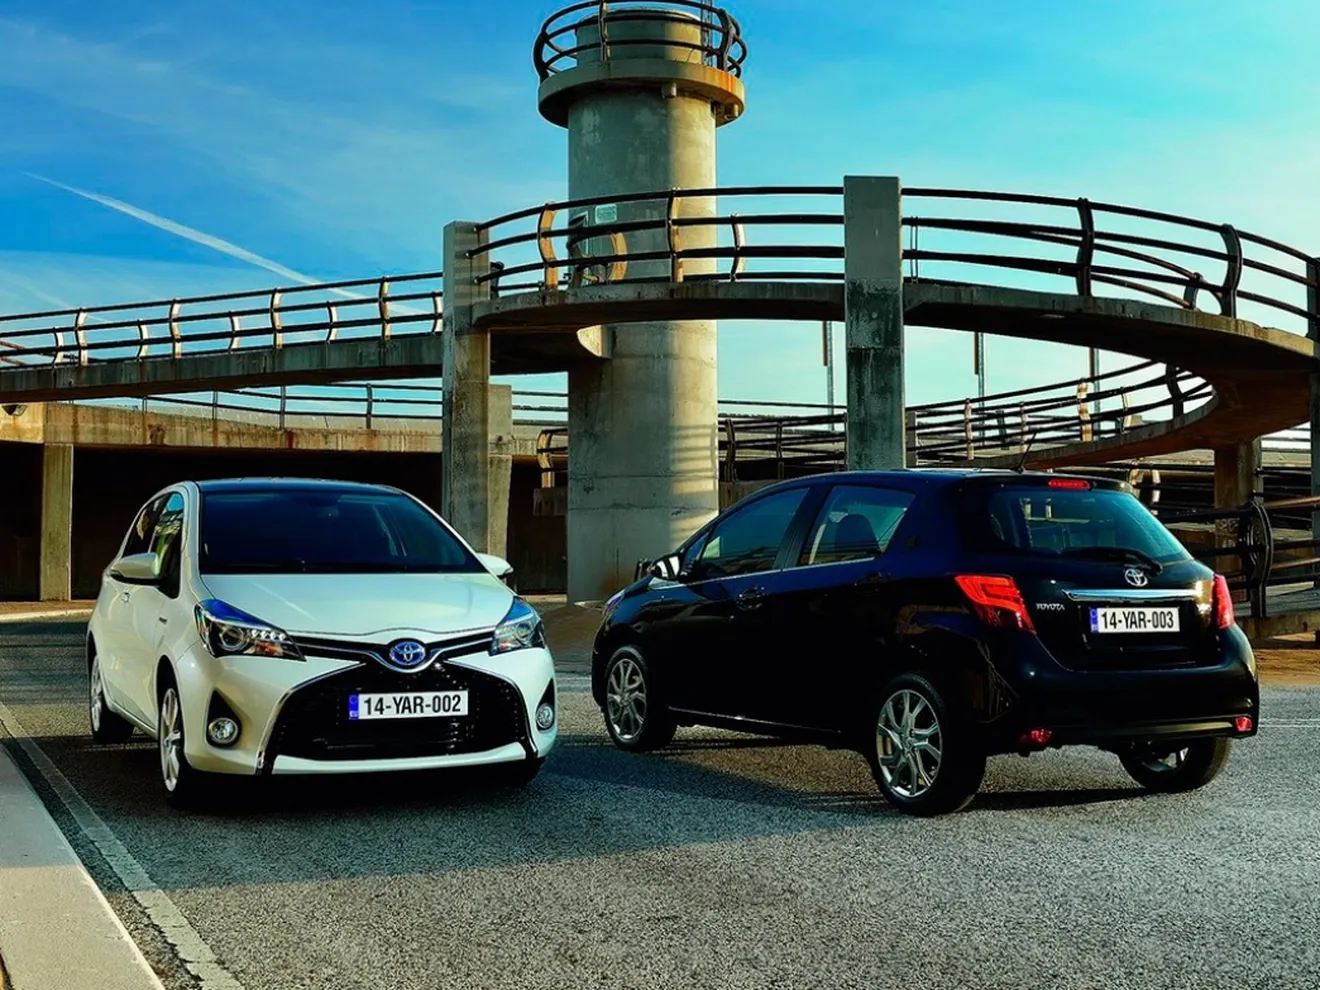 Toyota Yaris 2015, nueva plataforma, estética y motores por el mismo precio